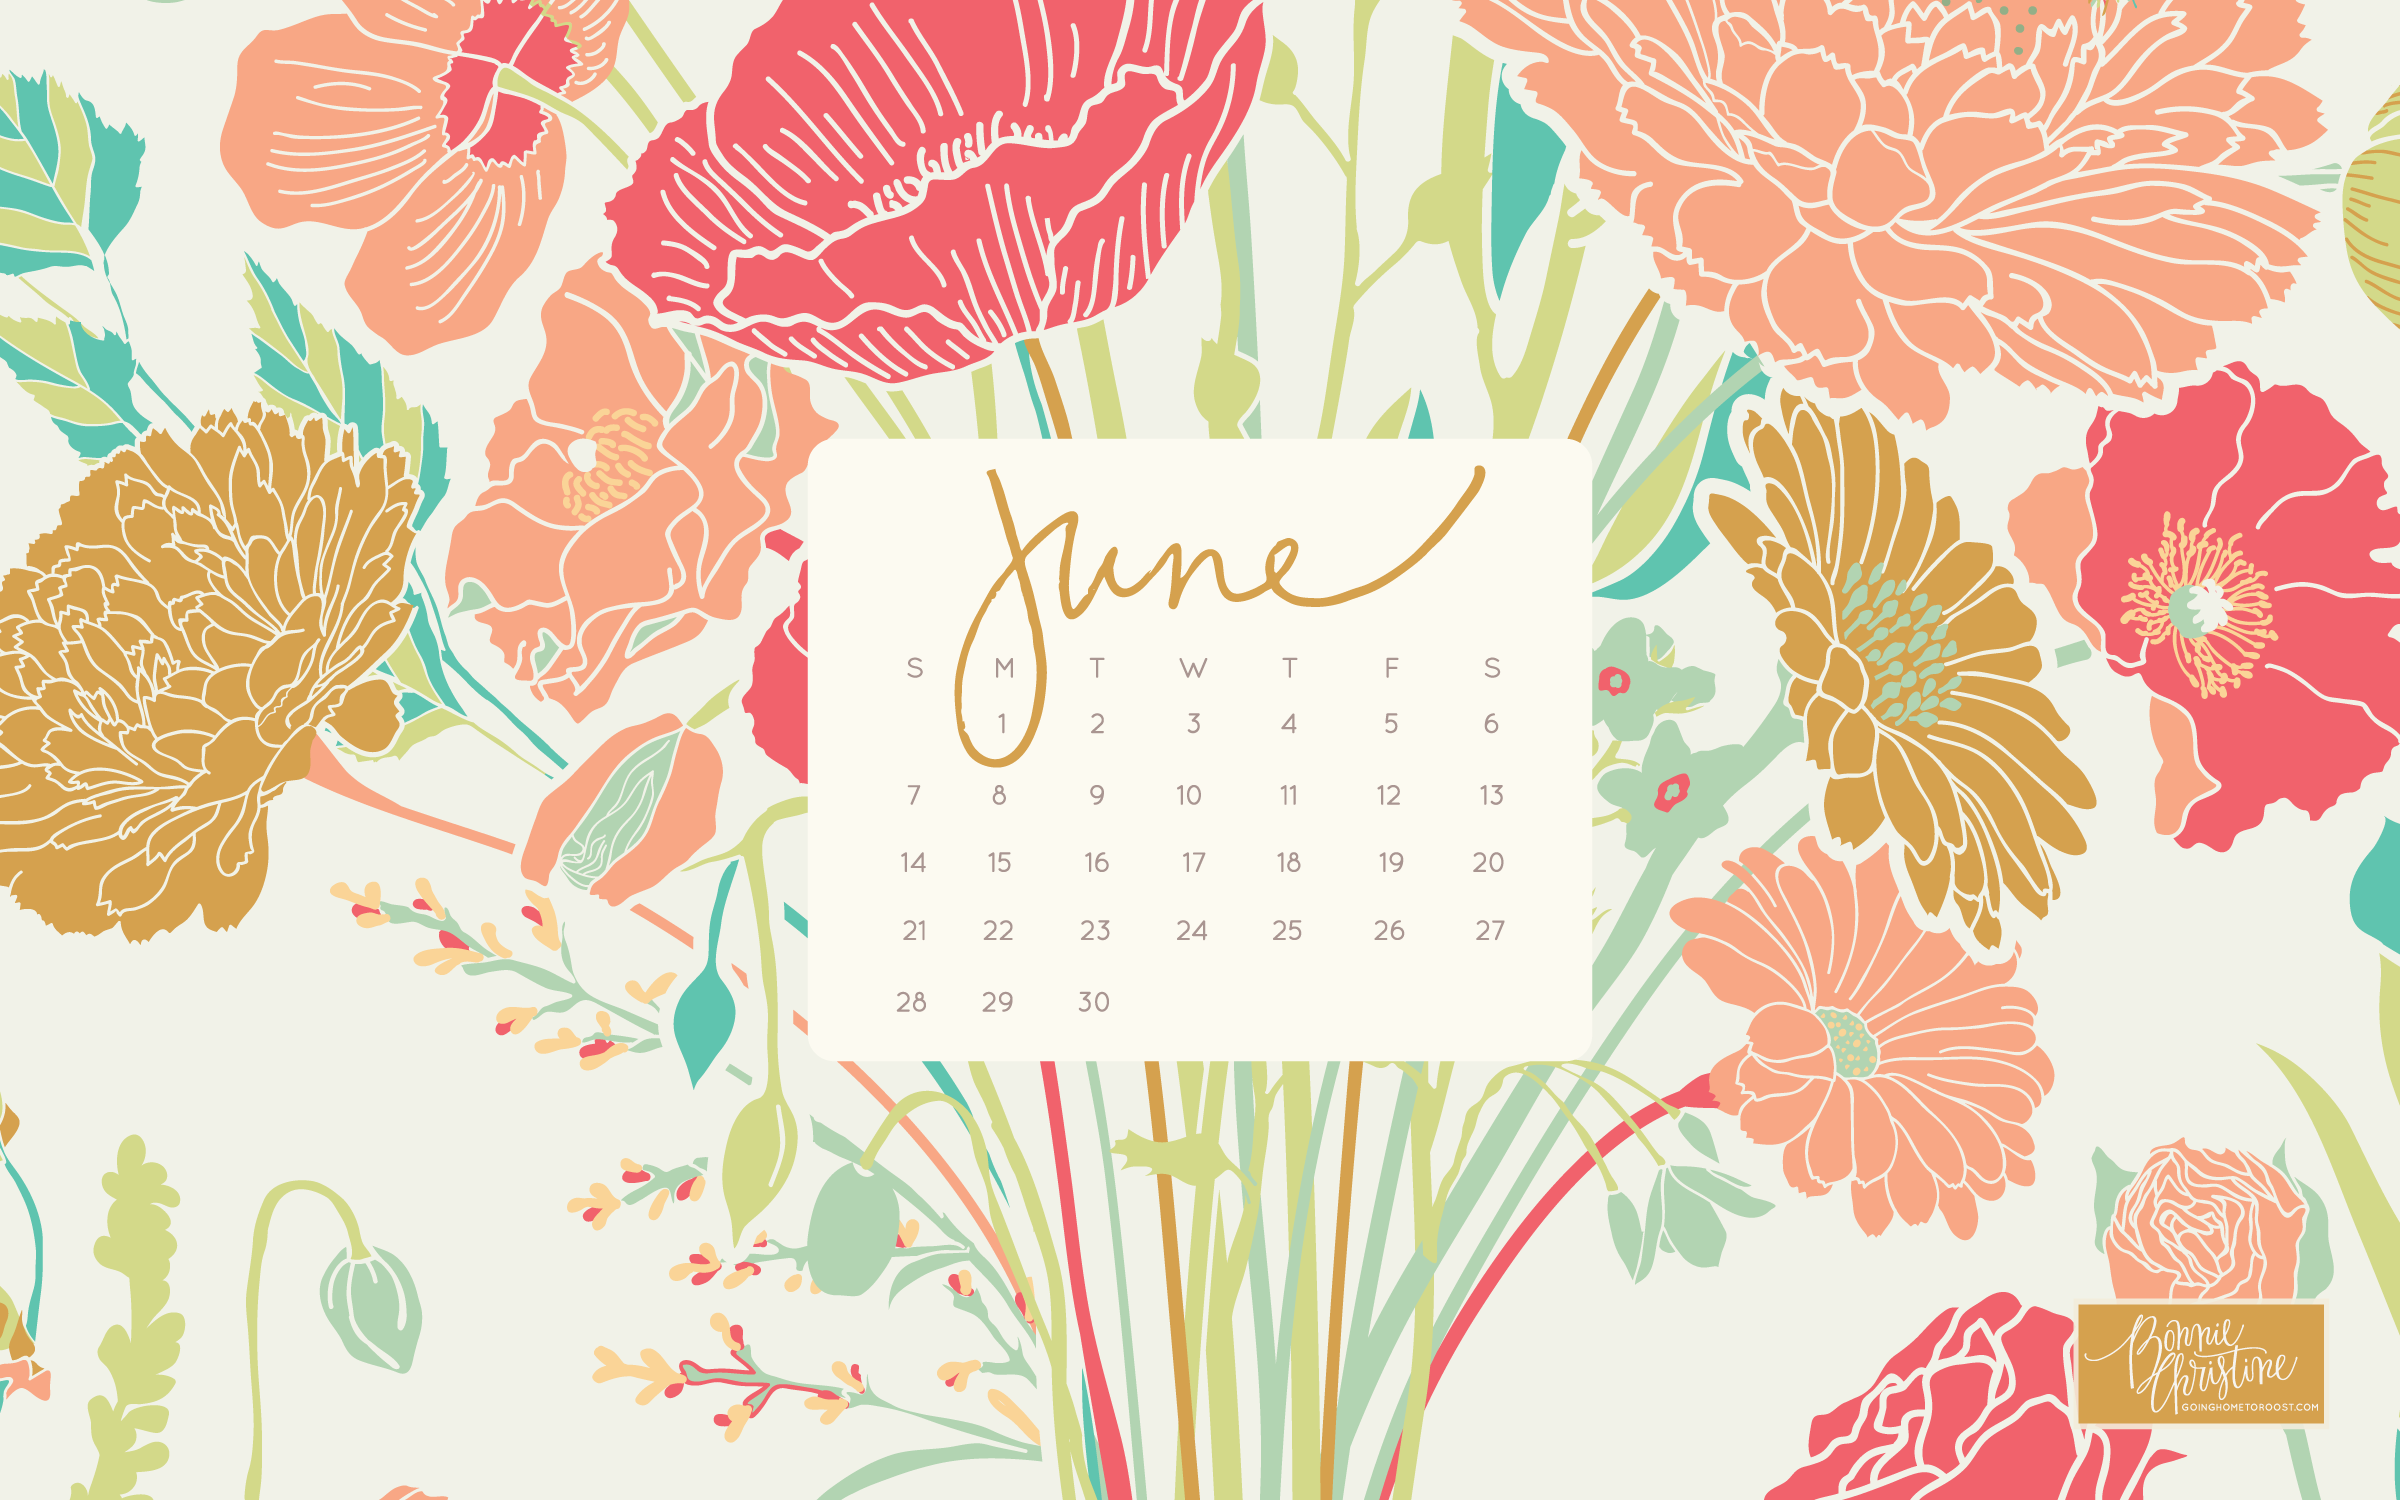 Floral Desktop Backgrounds For June By Bonnie Christine - June 2019 Calendar Background - HD Wallpaper 